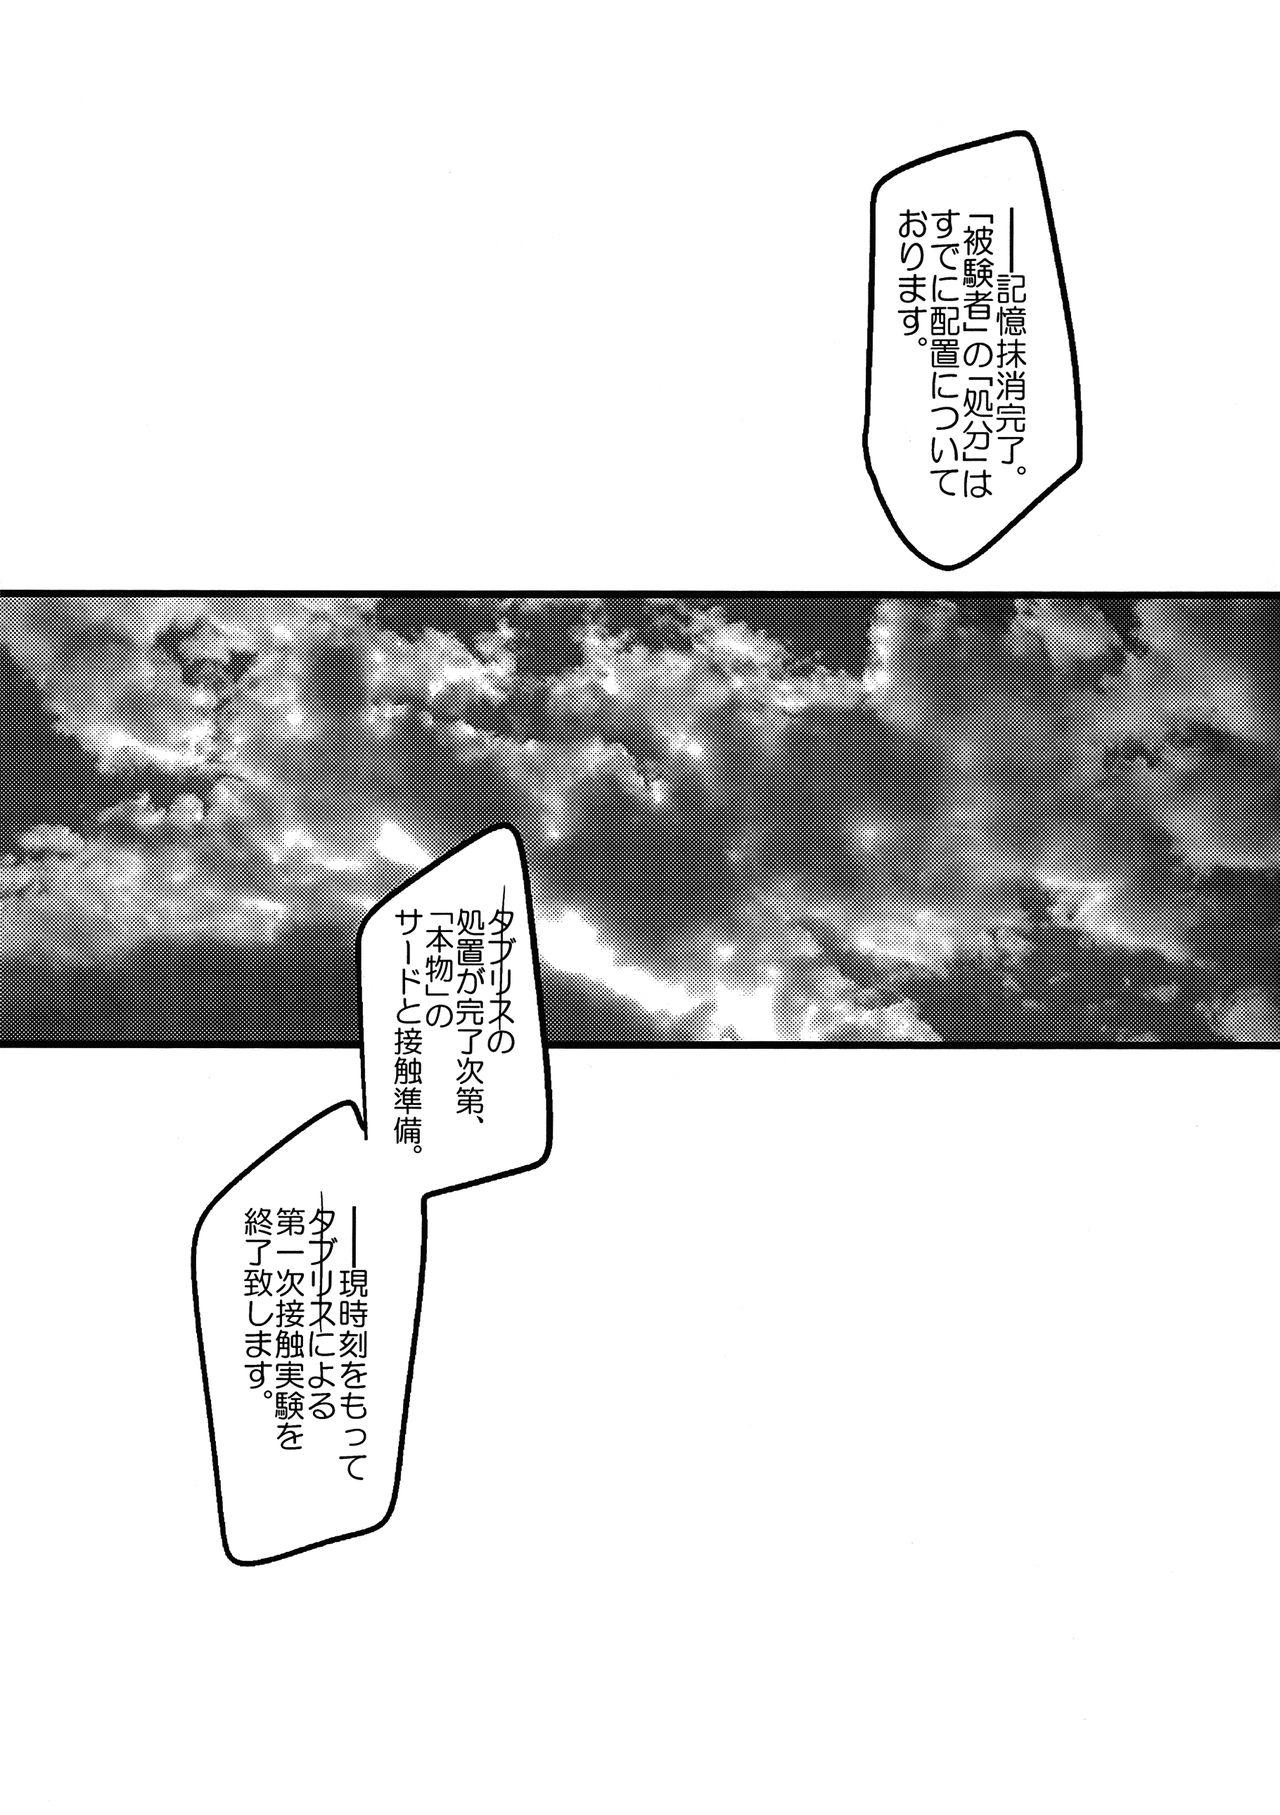 Swallowing Ore no Koto o Ikari Shinji da to Omoikomu Saimin ni Kakatta Nagisa Kaworu-kun wa Mechamecha Yasashii - Neon genesis evangelion Bikini - Page 11